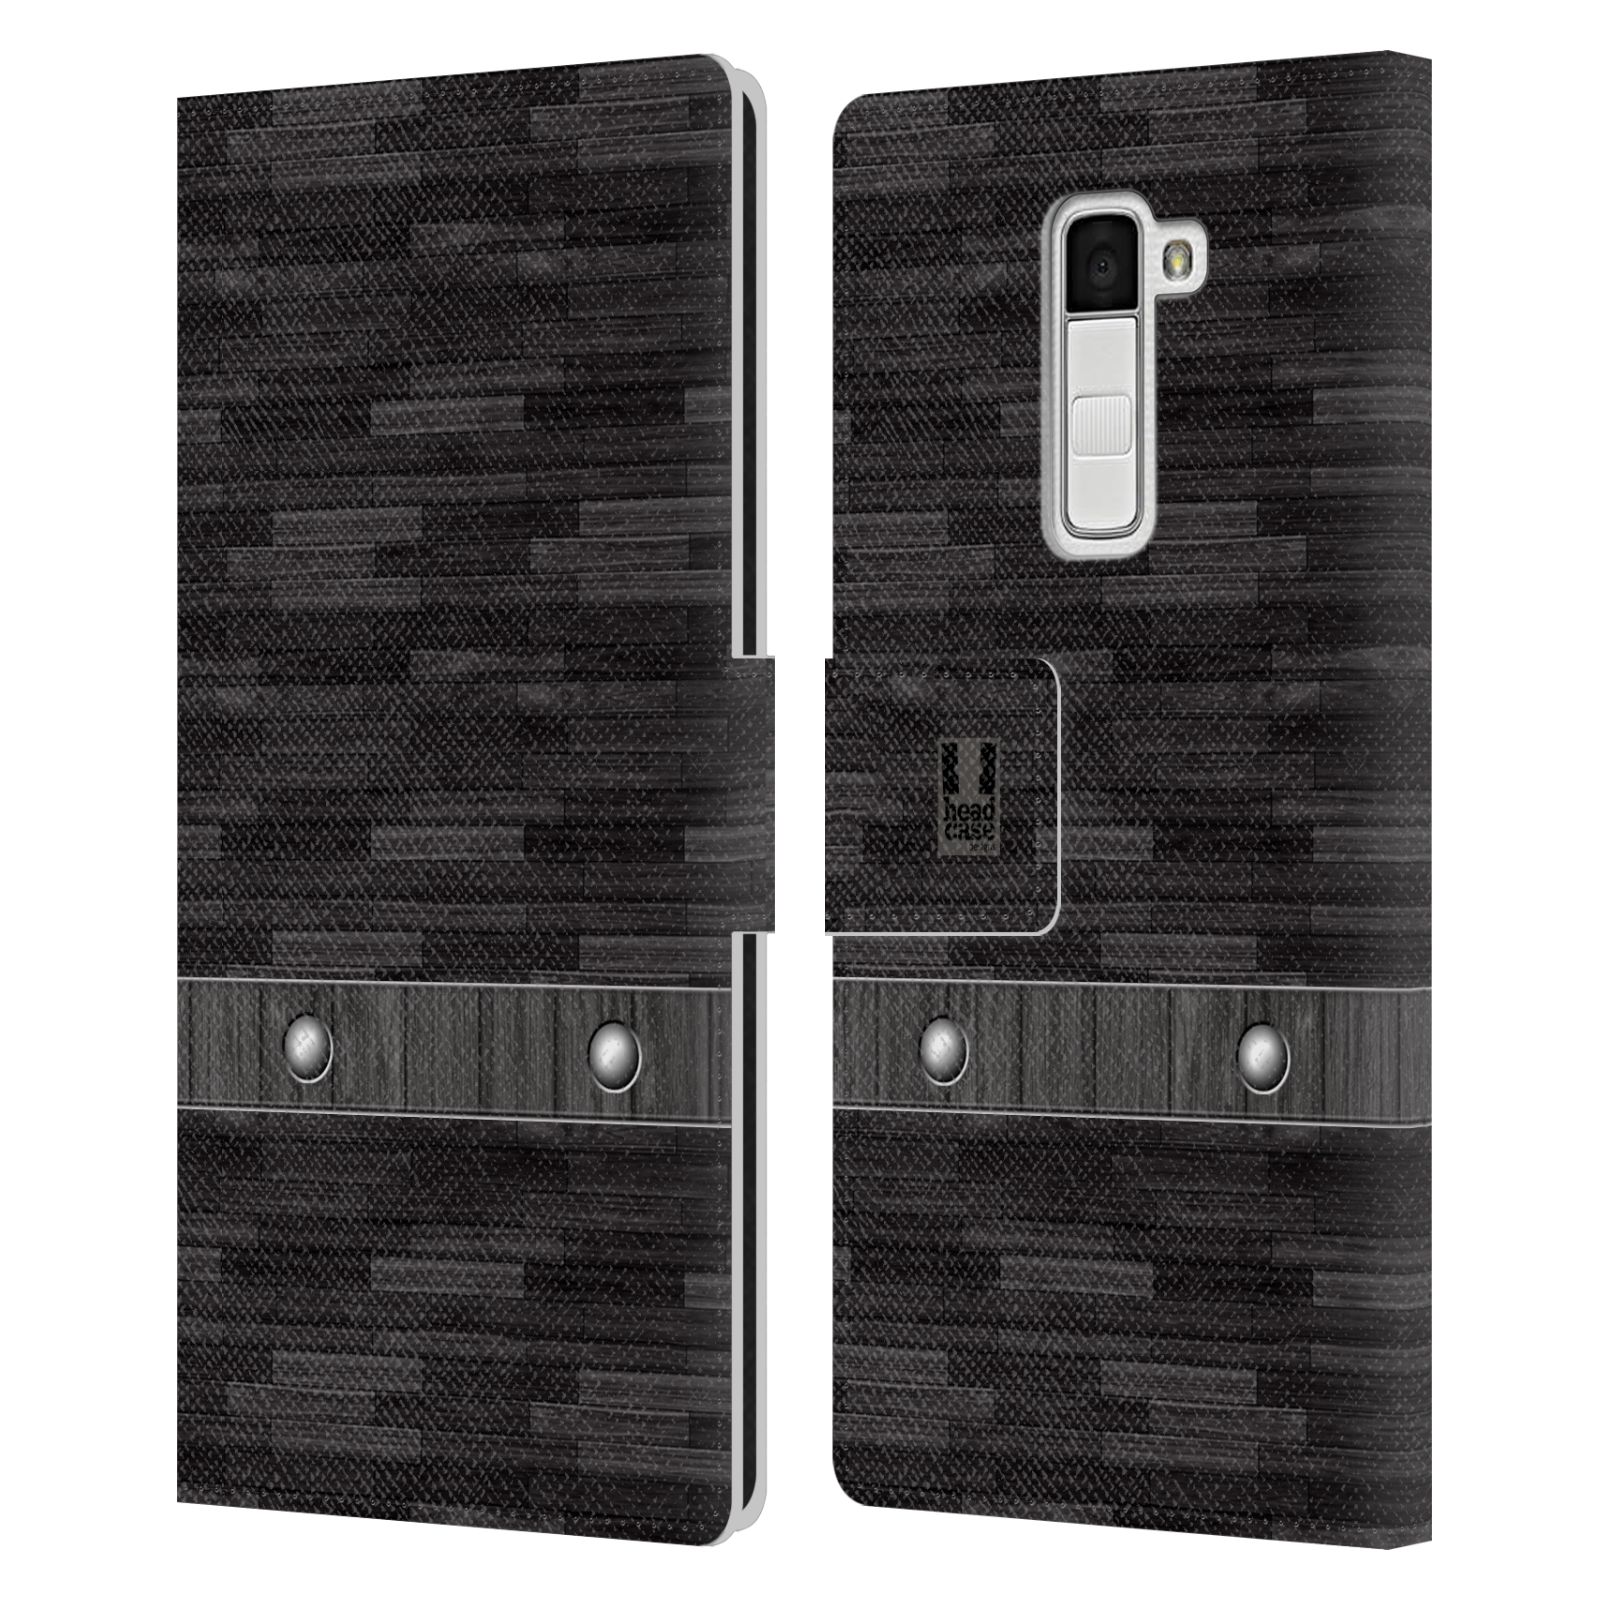 HEAD CASE Flipové pouzdro pro mobil LG K10 stavební textury dřevo černá barva